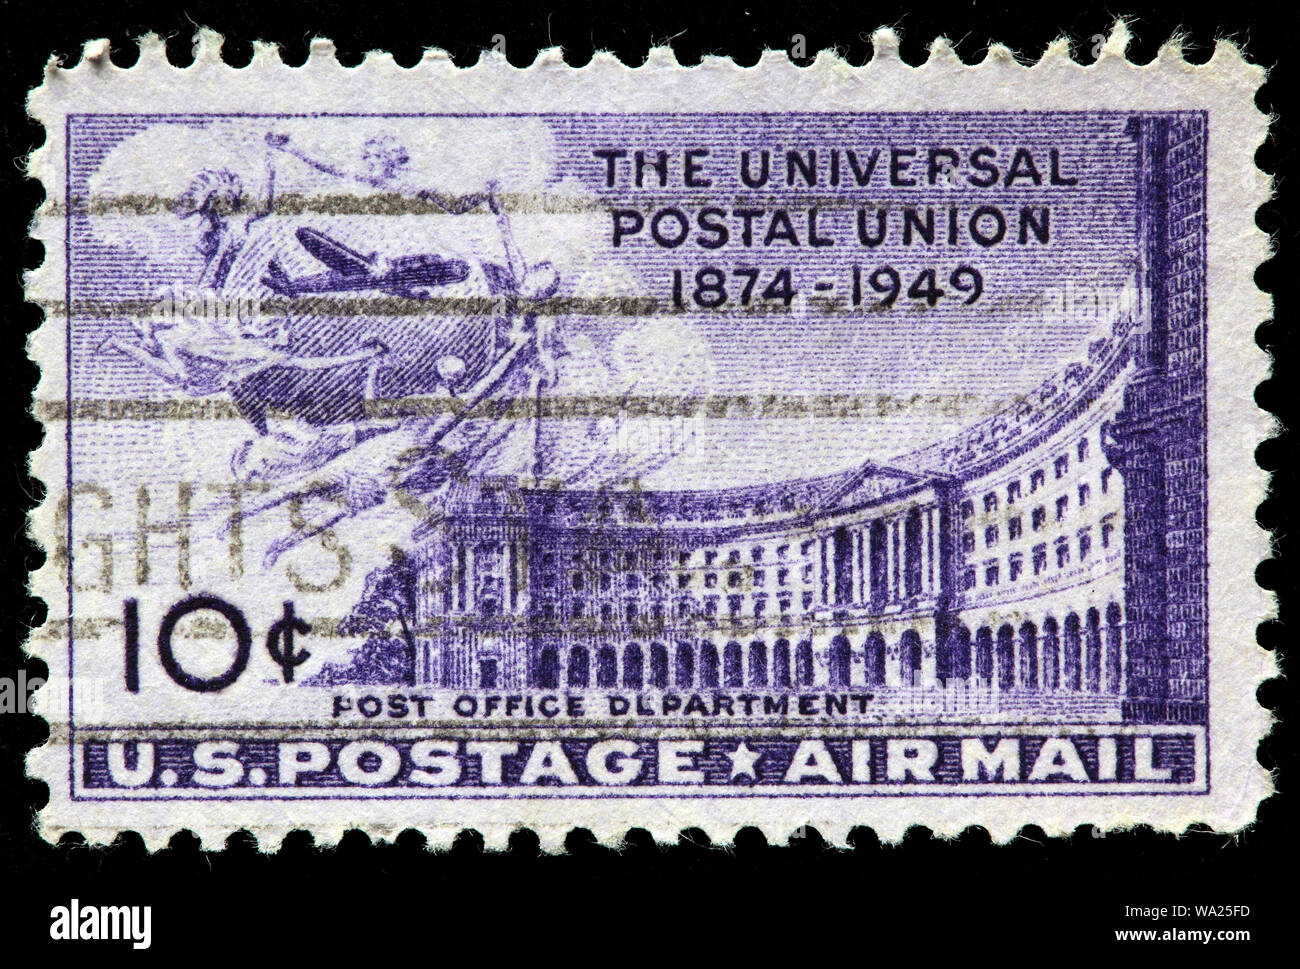 Il Post Office Department Building, UPU, Unione Postale Universale, francobollo, USA, 1949 Foto Stock